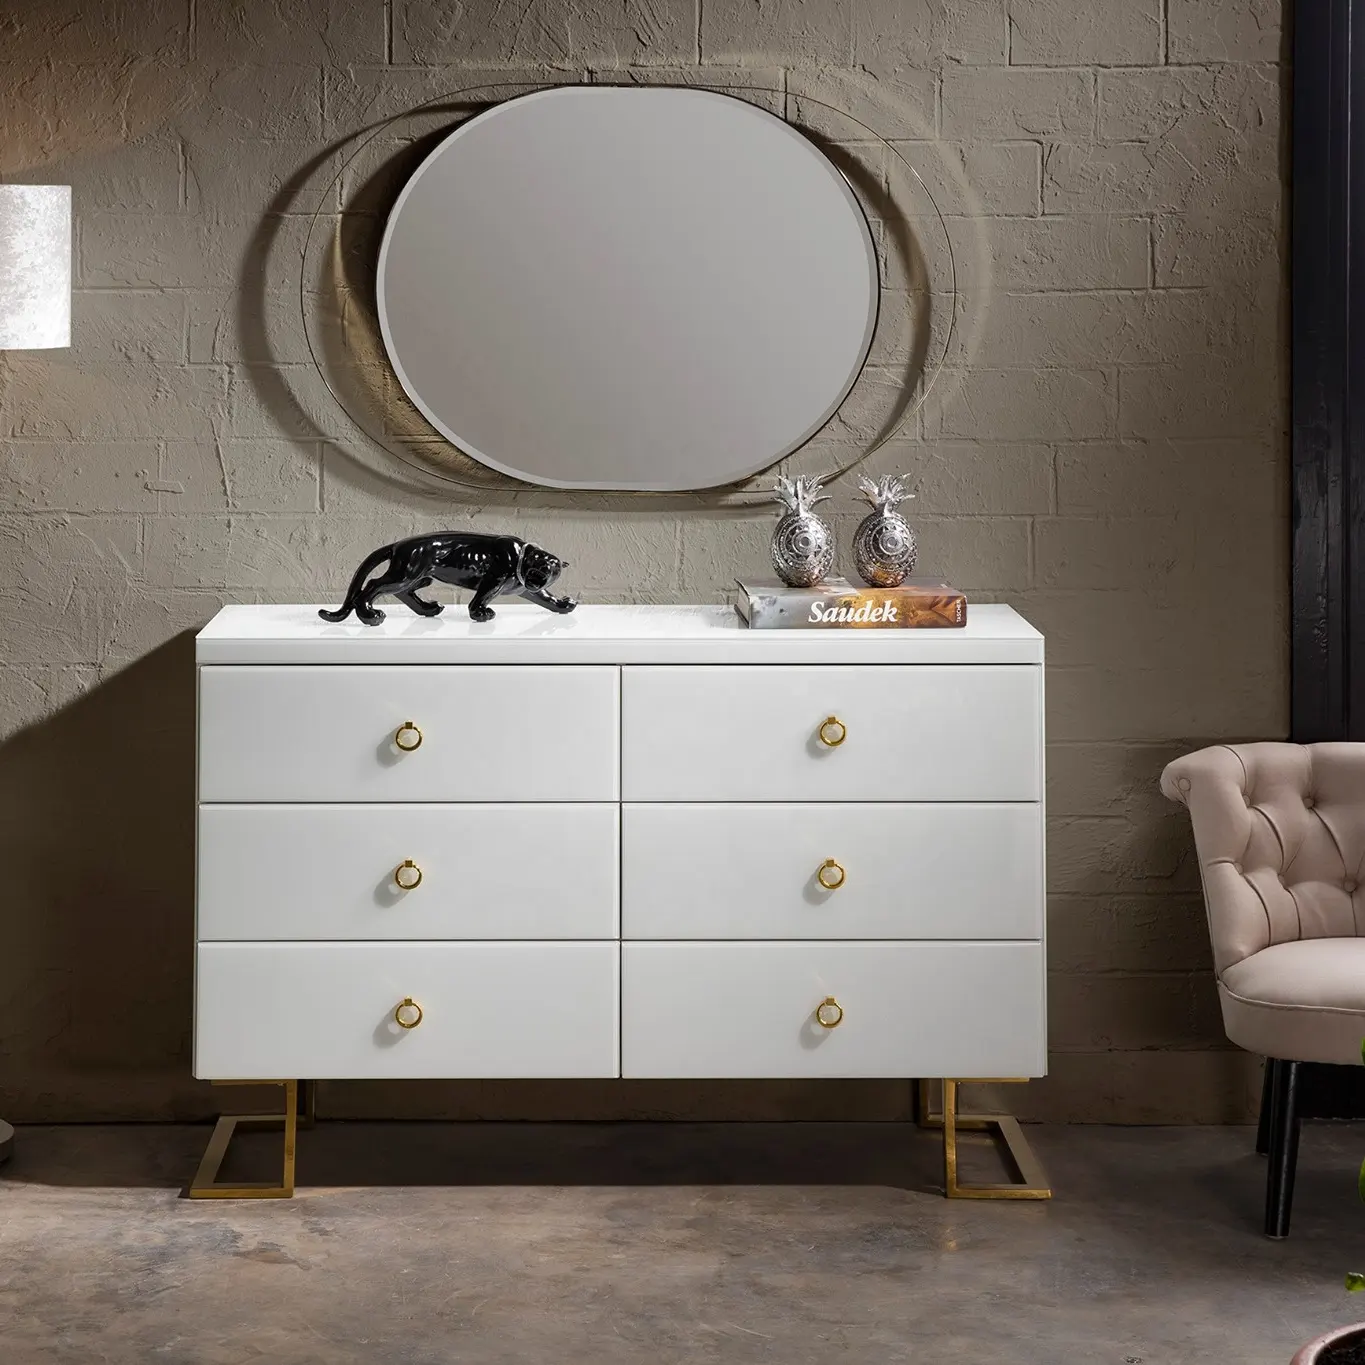 Sala de estar moderna de cor branca brilhante, espelho de vidro de 6 gavetas com alças e pernas de ouro